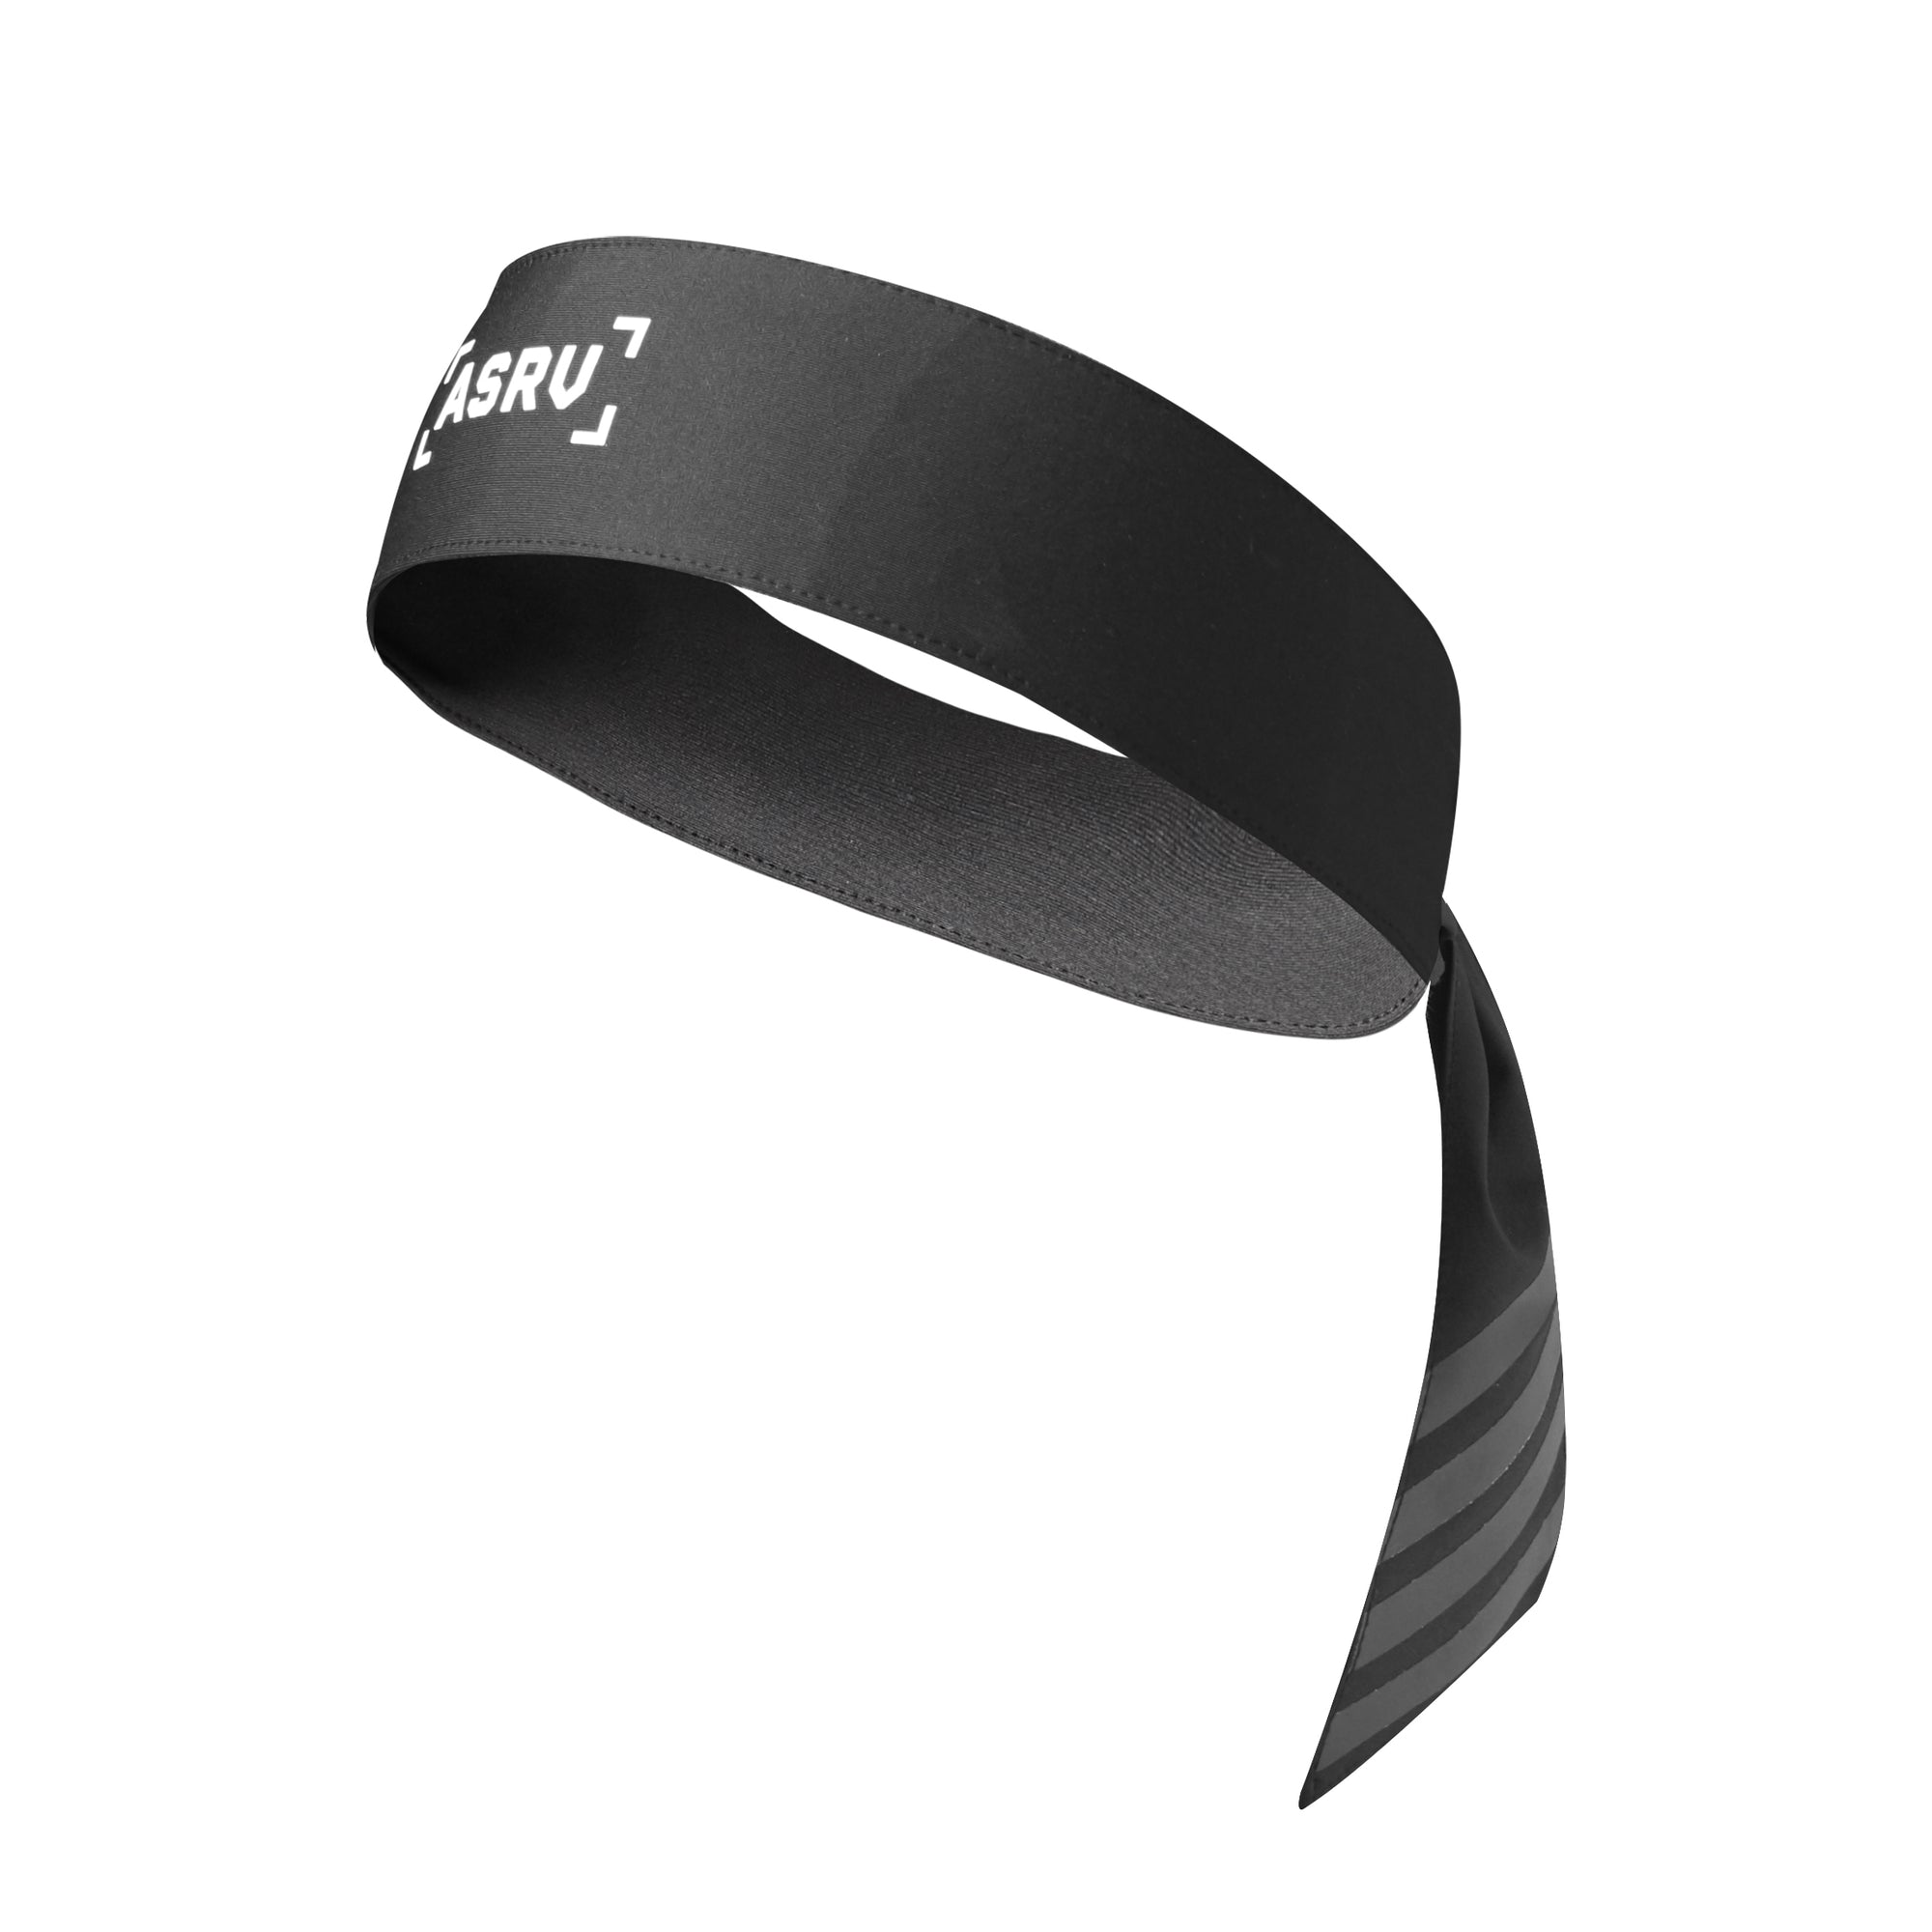 Ninja Headband SilverPlus® - Black - ASRV